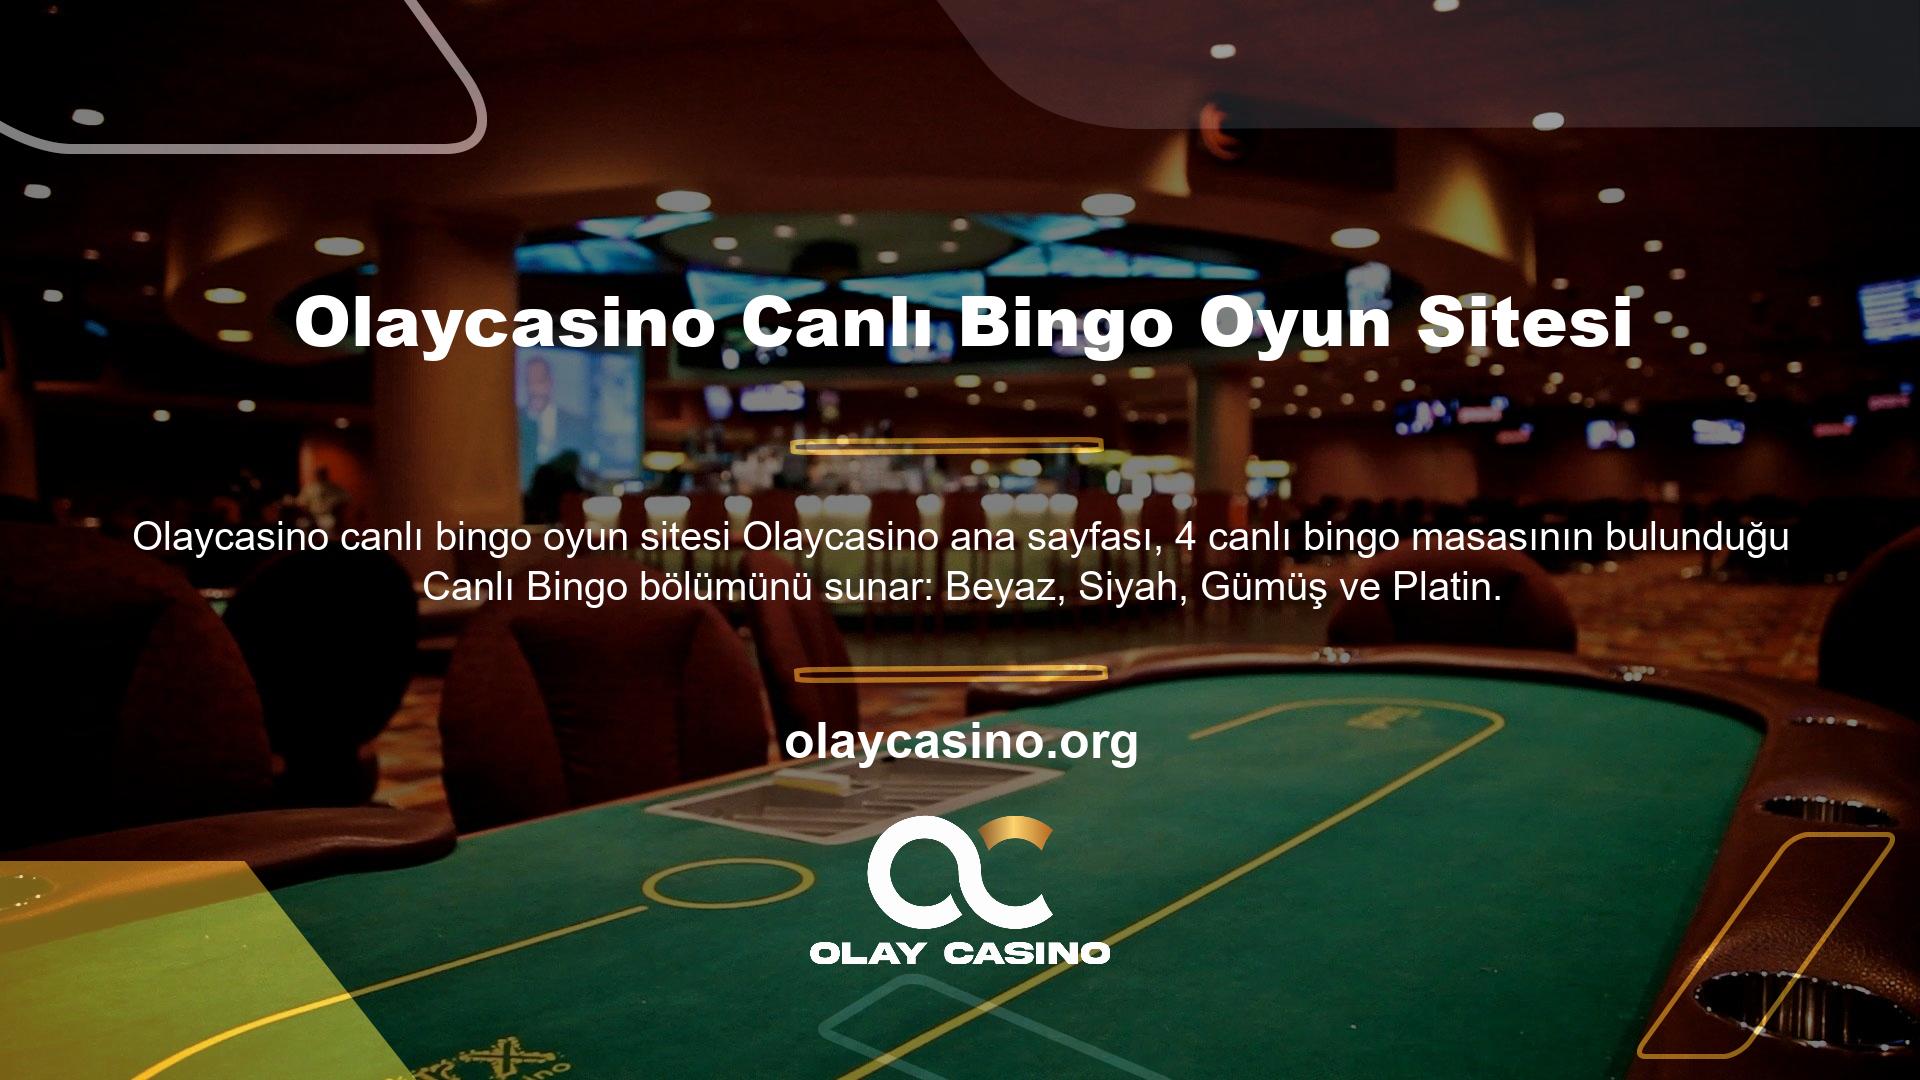 Olaycasino çevrimiçi bingo sitesi Live Bingo hem basit hem de eğlenceli